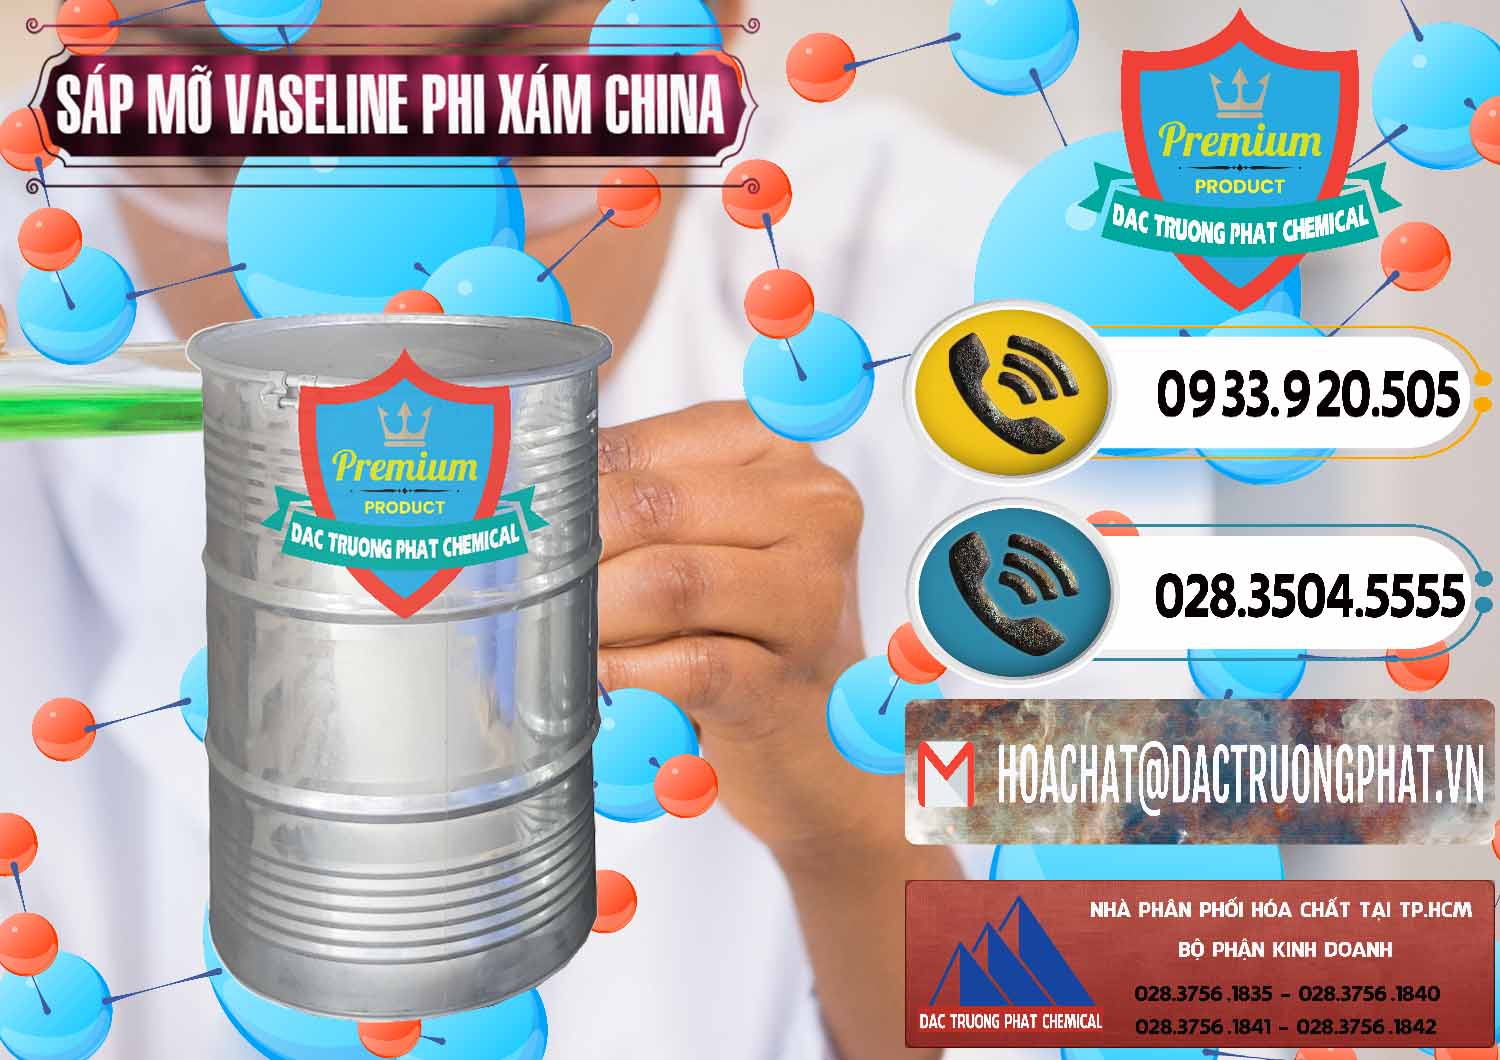 Công ty chuyên phân phối - bán Sáp Mỡ Vaseline Phi Xám Trung Quốc China - 0291 - Nơi cung cấp ( phân phối ) hóa chất tại TP.HCM - hoachatdetnhuom.vn